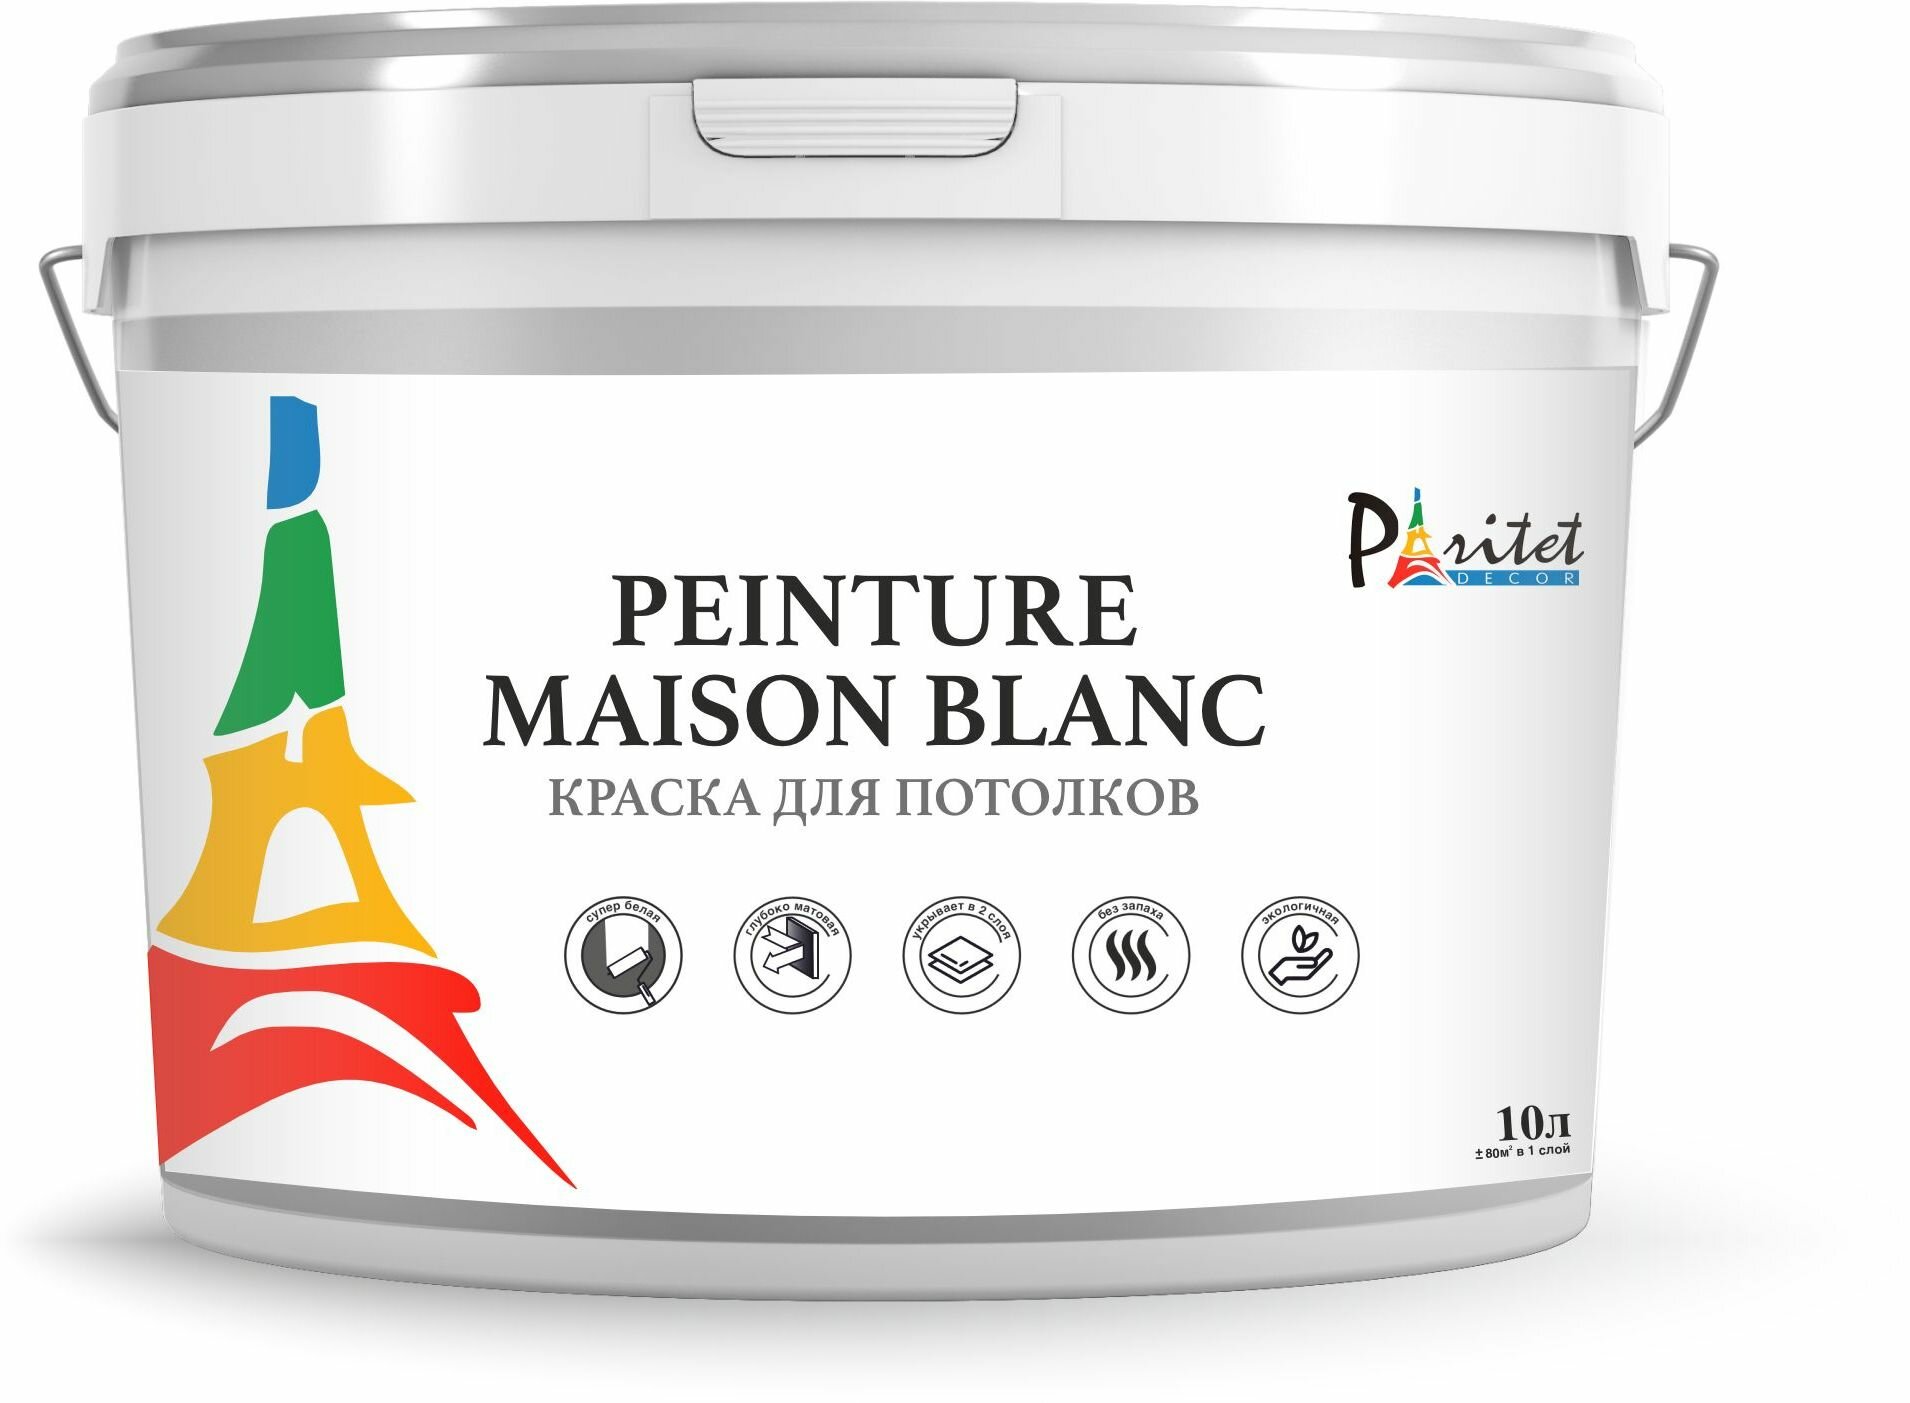 Краска интерьерная для потолков Paritet Peinture Maison Blanc 10 л